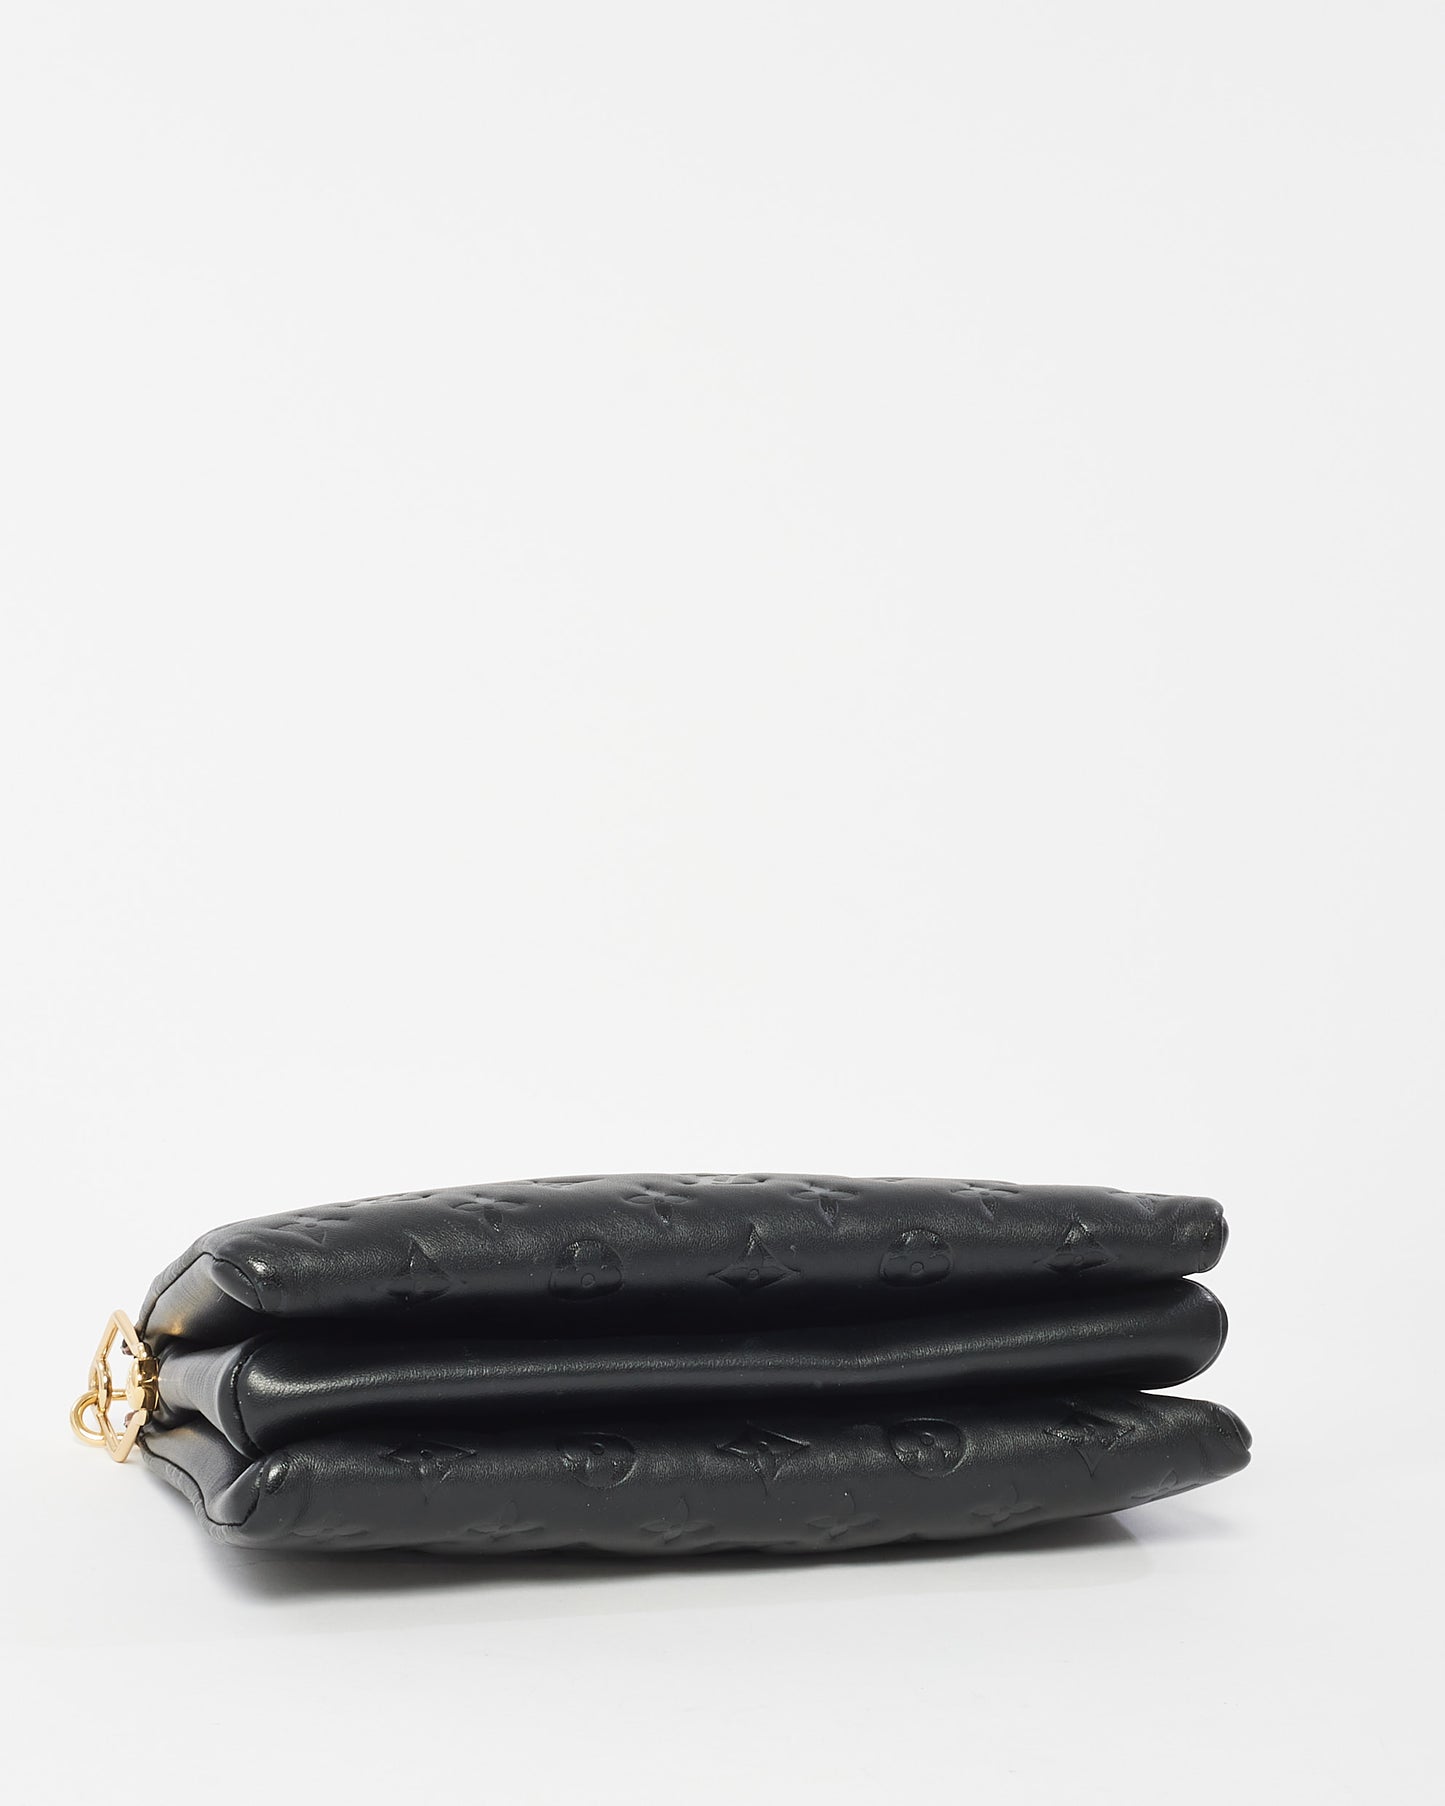 Louis Vuitton Black Monogram Empreinte Leather Coussin Bag